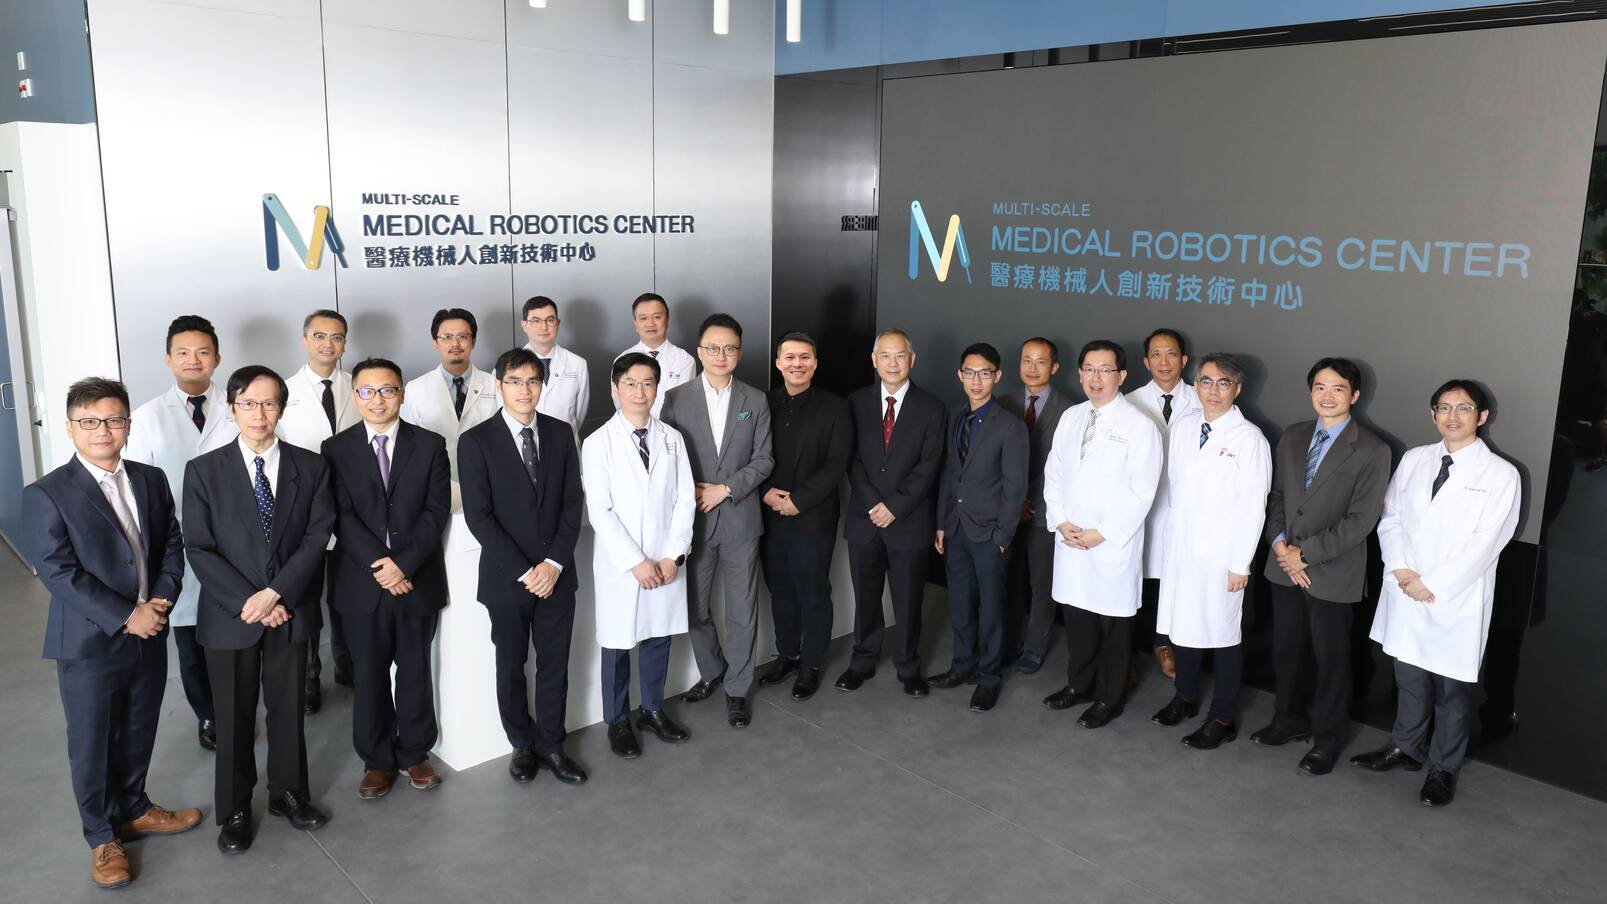 醫療機械人創新技術中心(MRC)主要研究人員和顧問來自醫學院和工程學院，以實現跨學科醫療機械人的研究和開發。